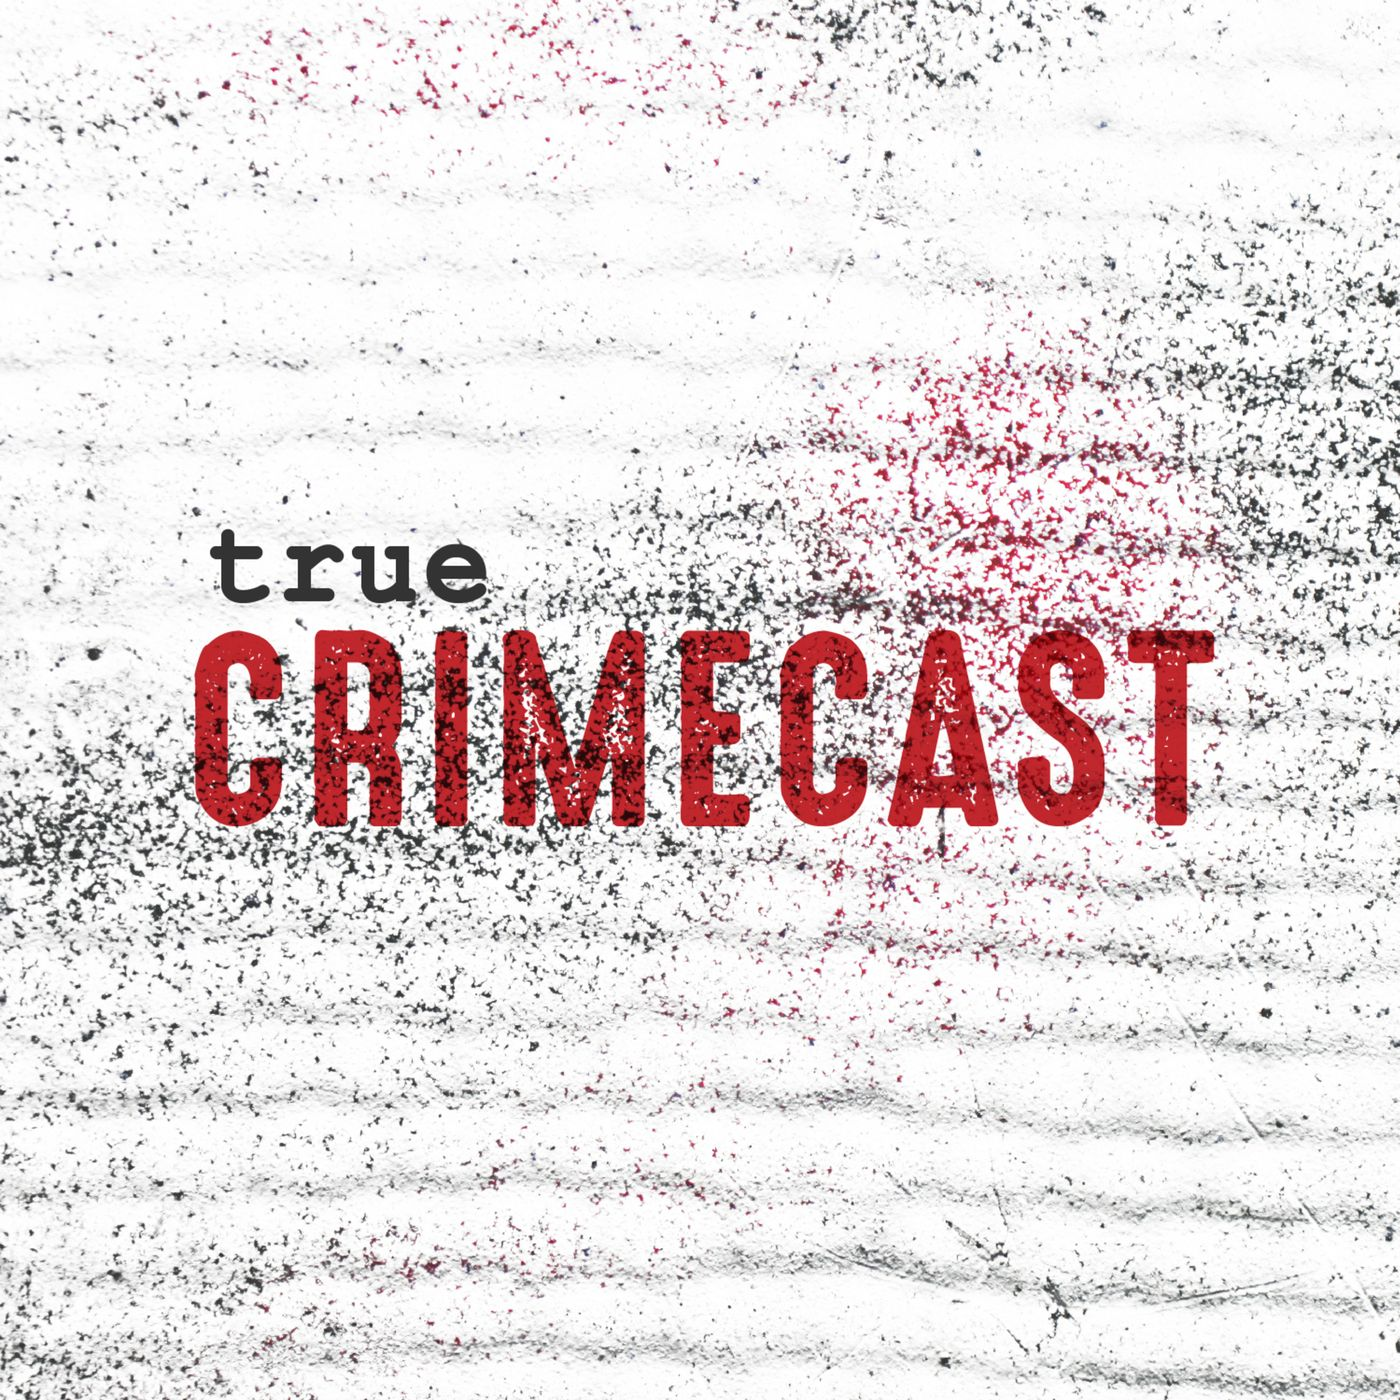 True Crimecast